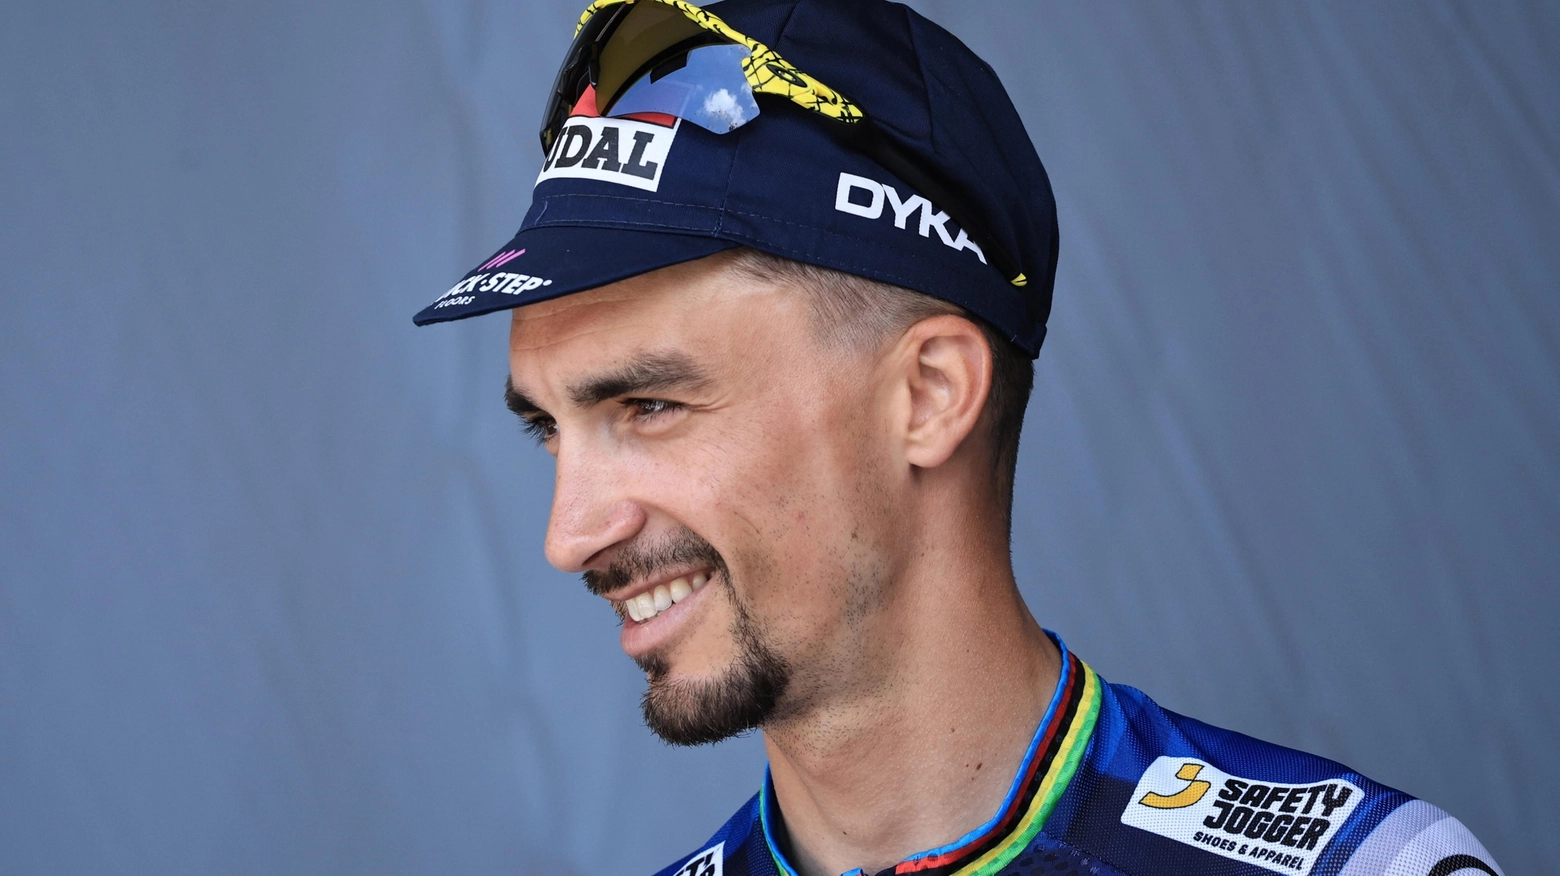 Il francese arricchisce la start list già da urlo della Corsa Rosa, sognata dalla nuova Polti-Kometa di Basso e Contador